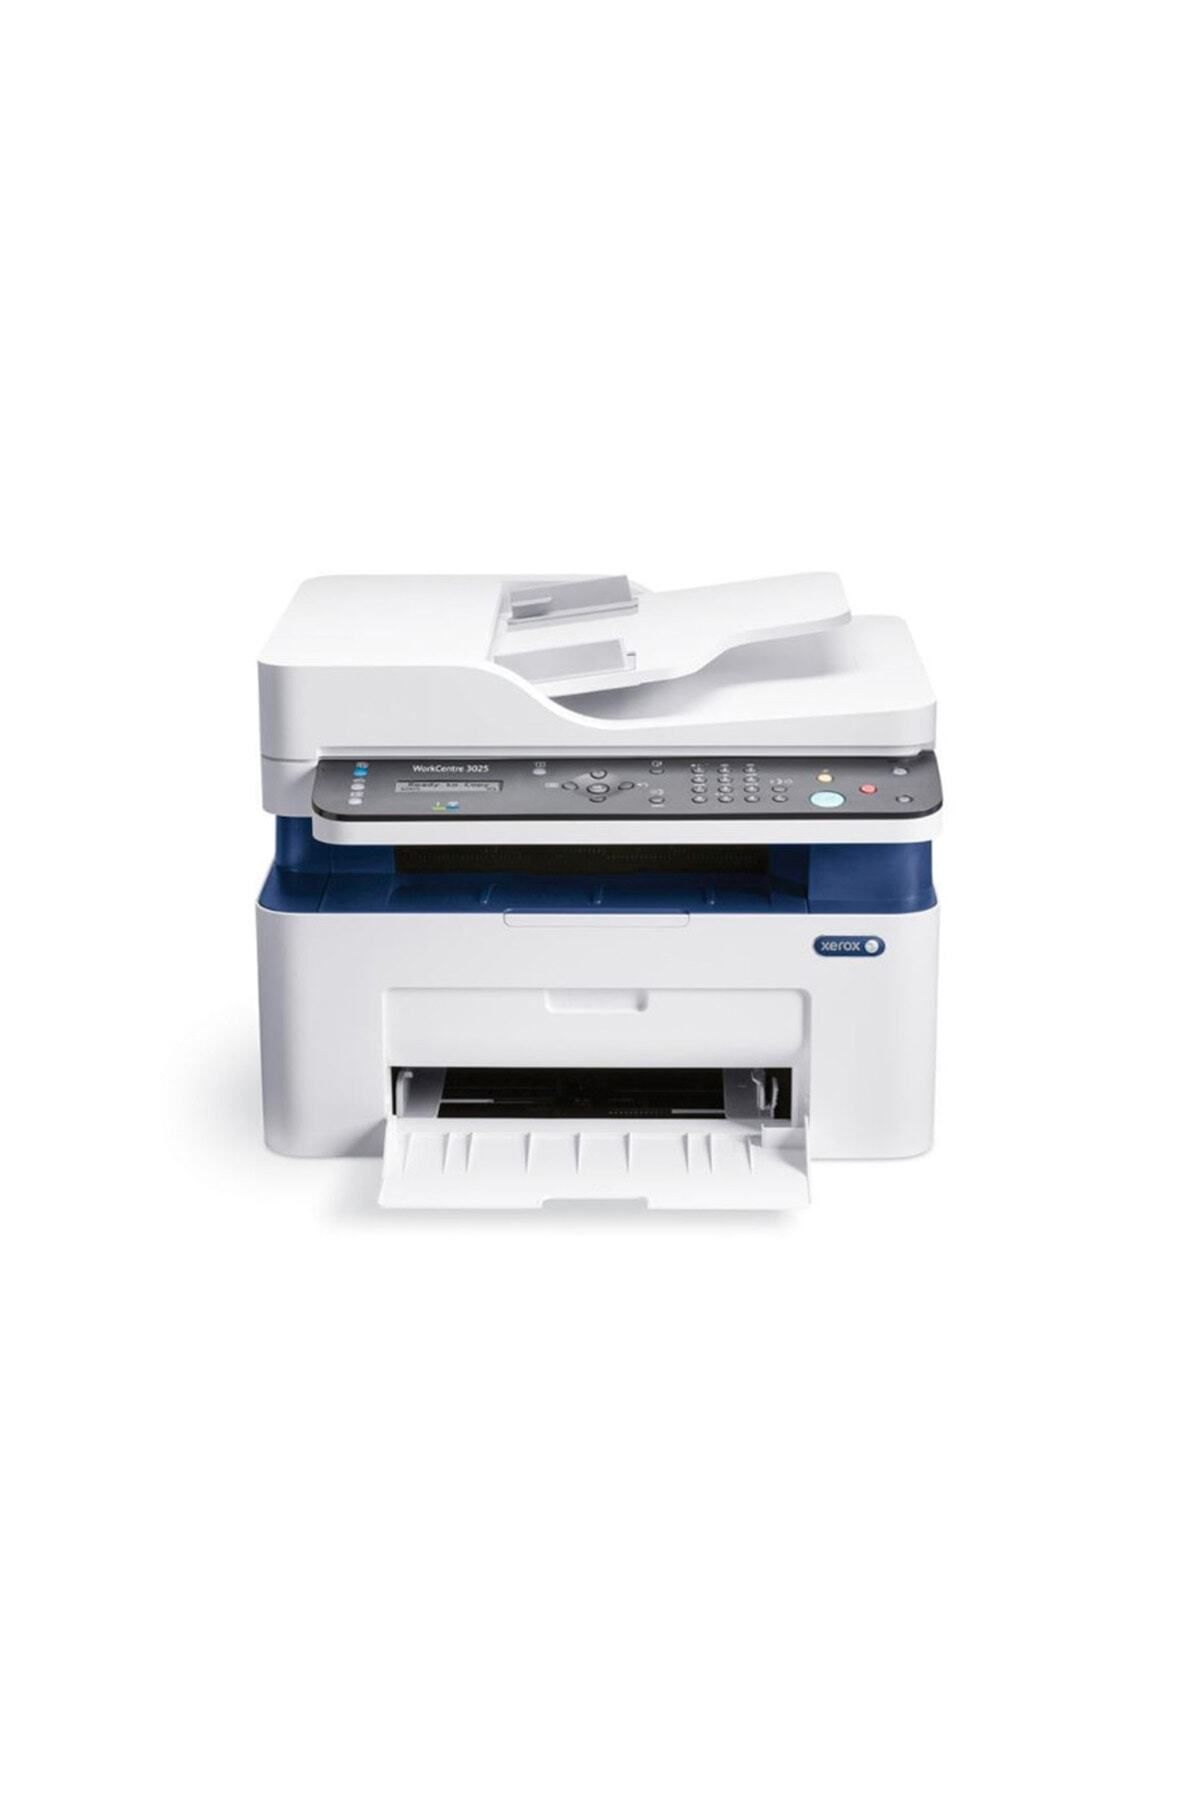 Xerox Workcentre 3025nı Wifi Çok Fonksiyonlu Lazer Yazıcı